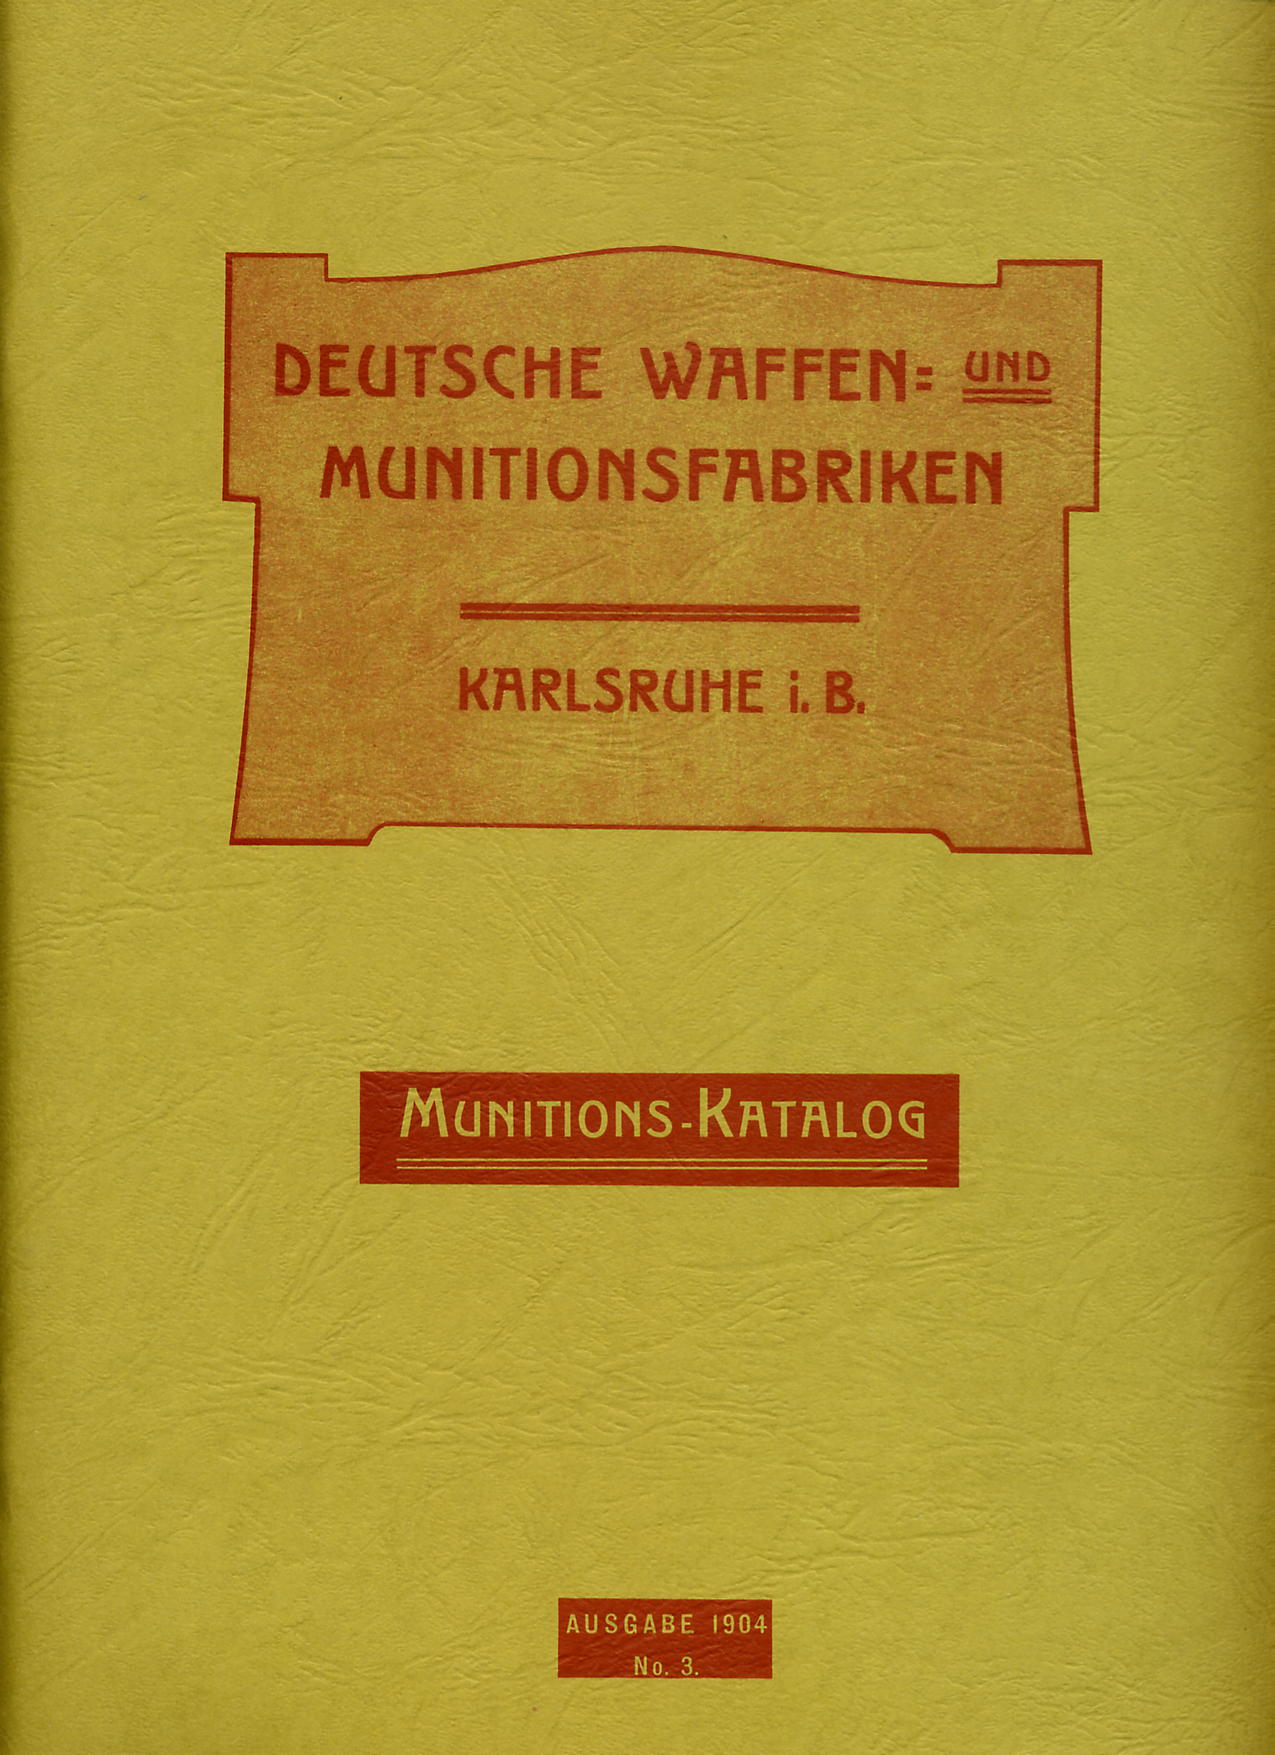 DWM Ammuntion Catalogue Circa 1900. Ref. #W12